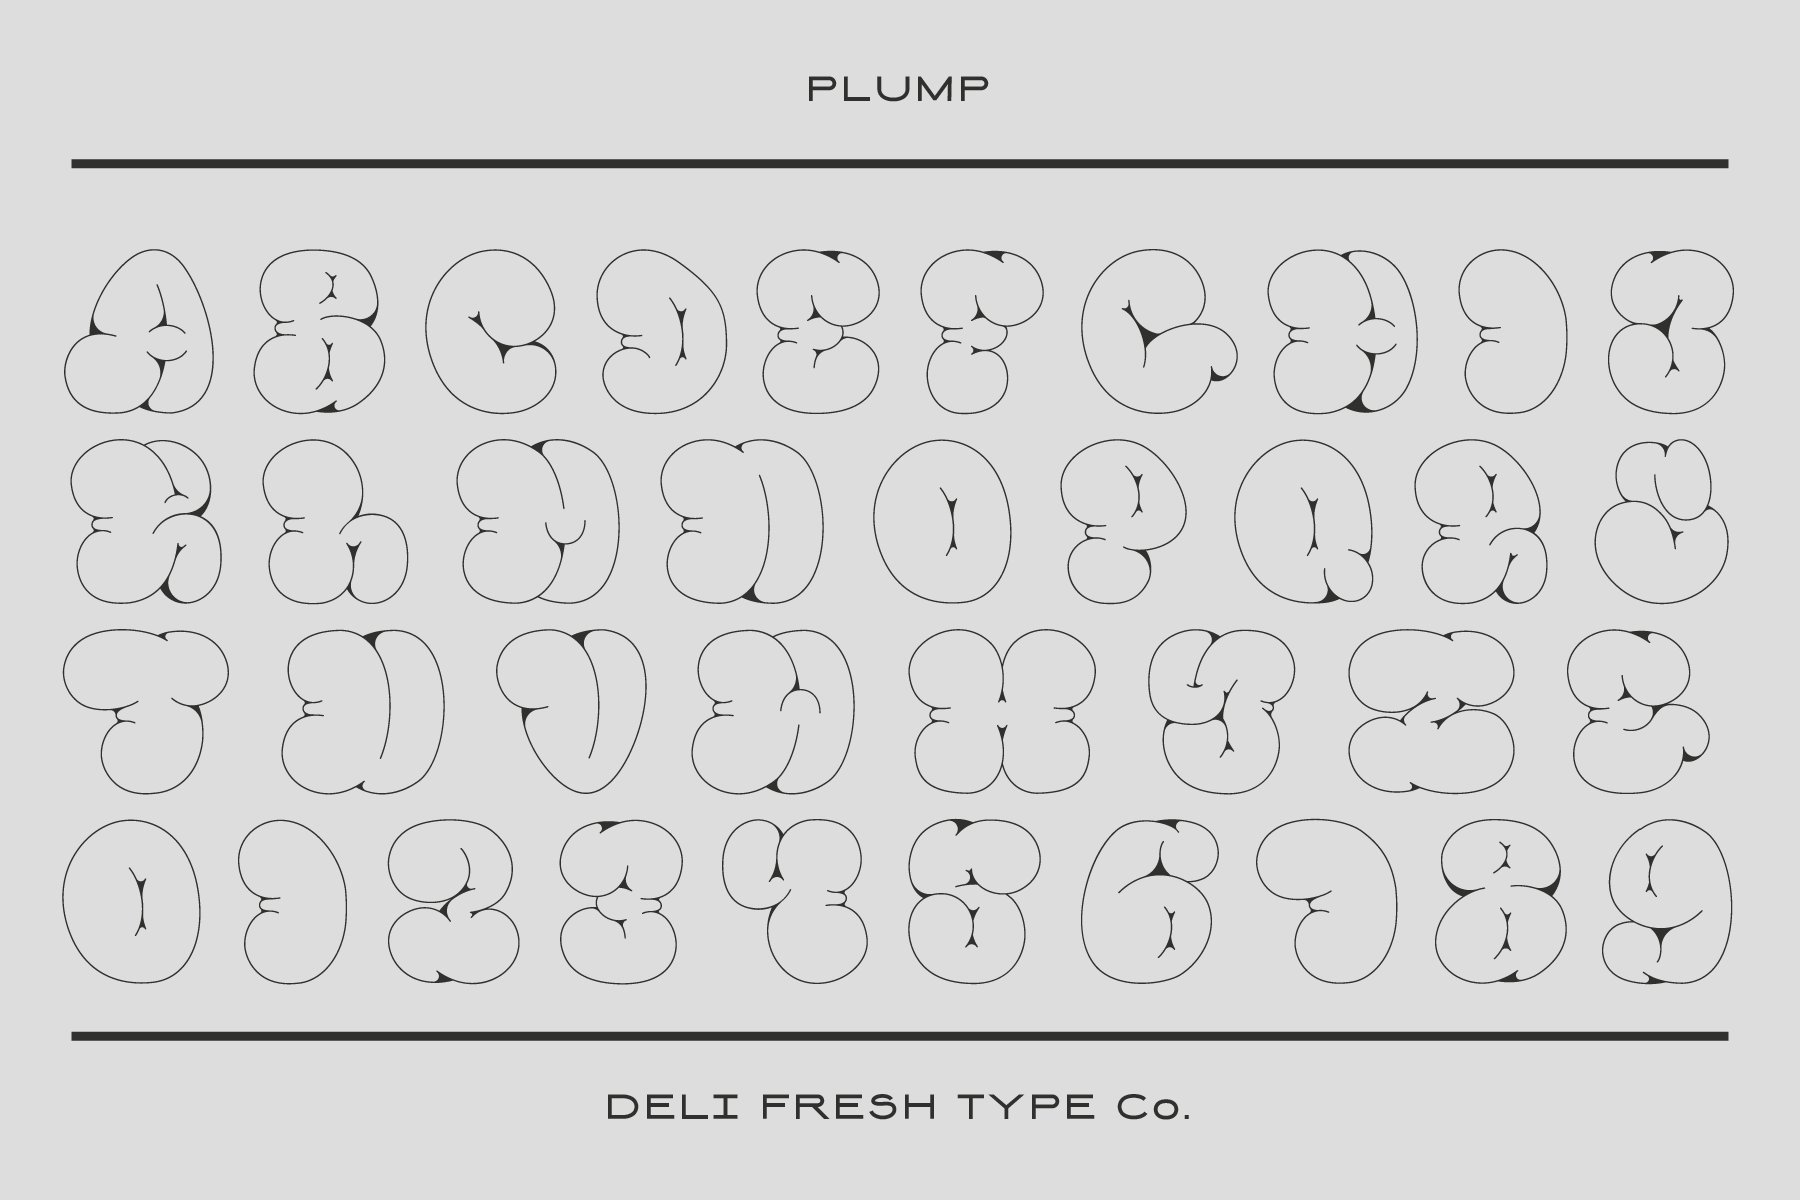 Plump: A Bubble Letter Font preview image.